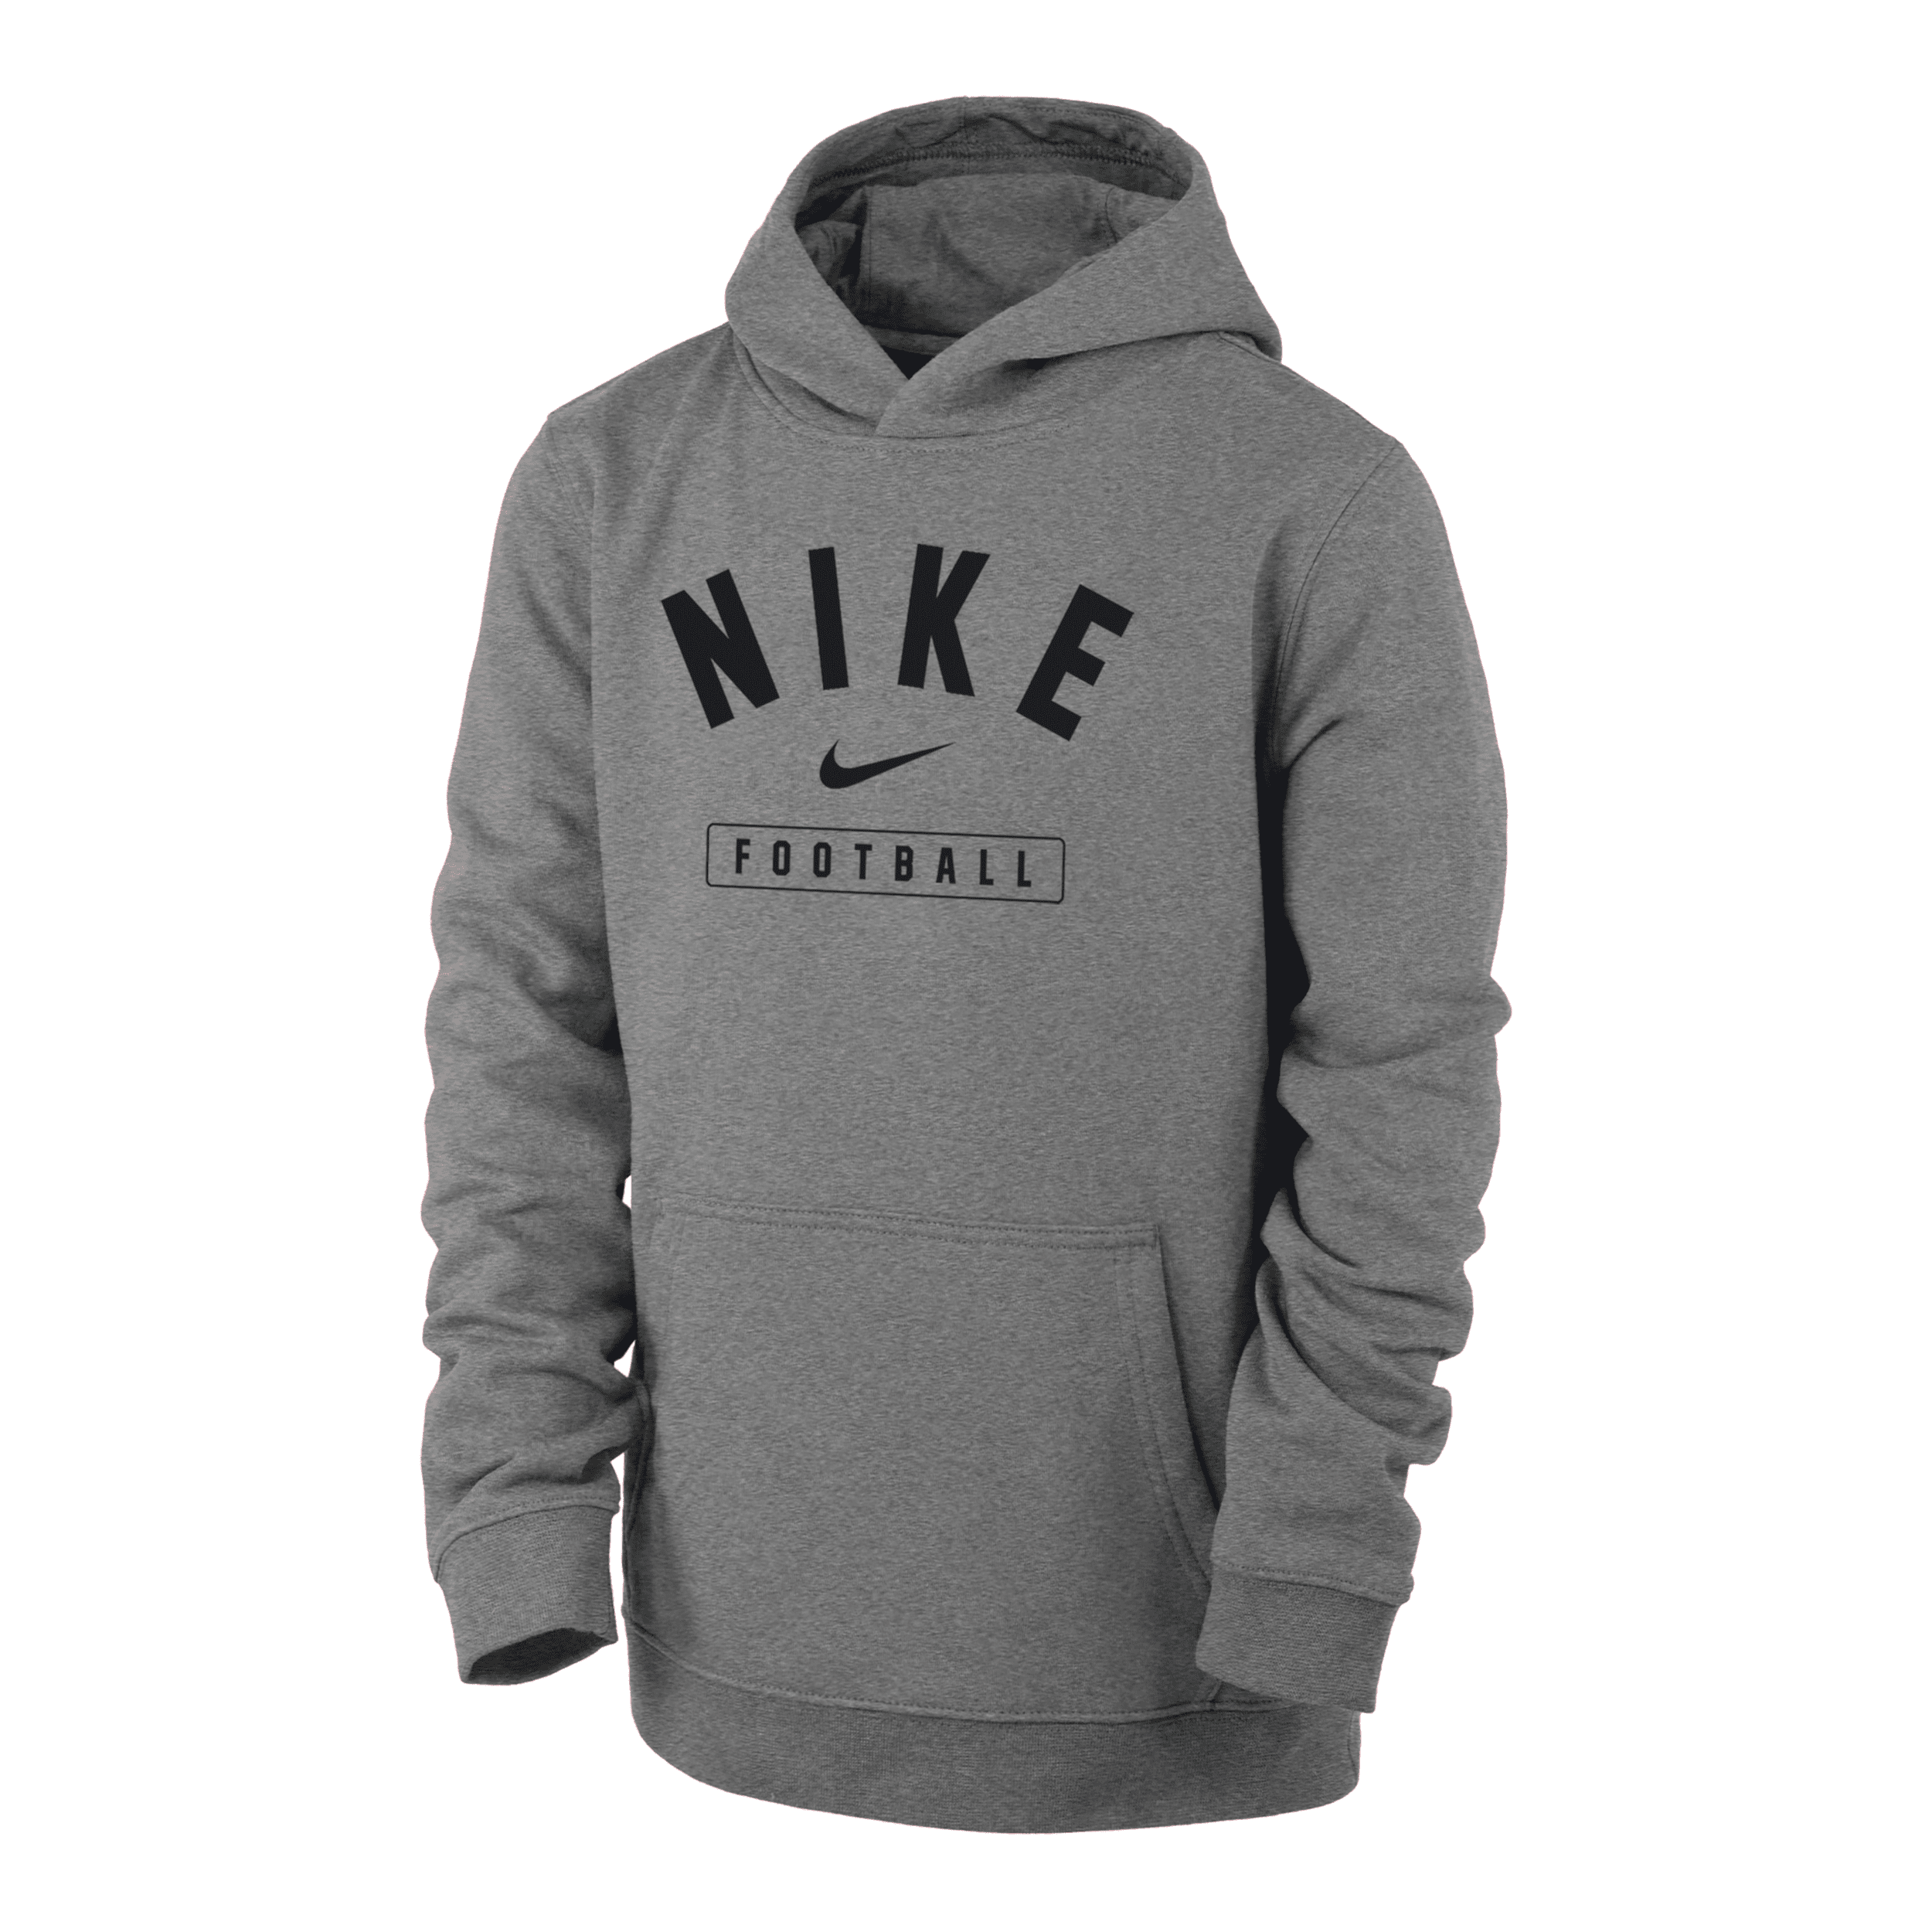 Nike Football Big Kids' (boys') Pullover Hoodie In Grey